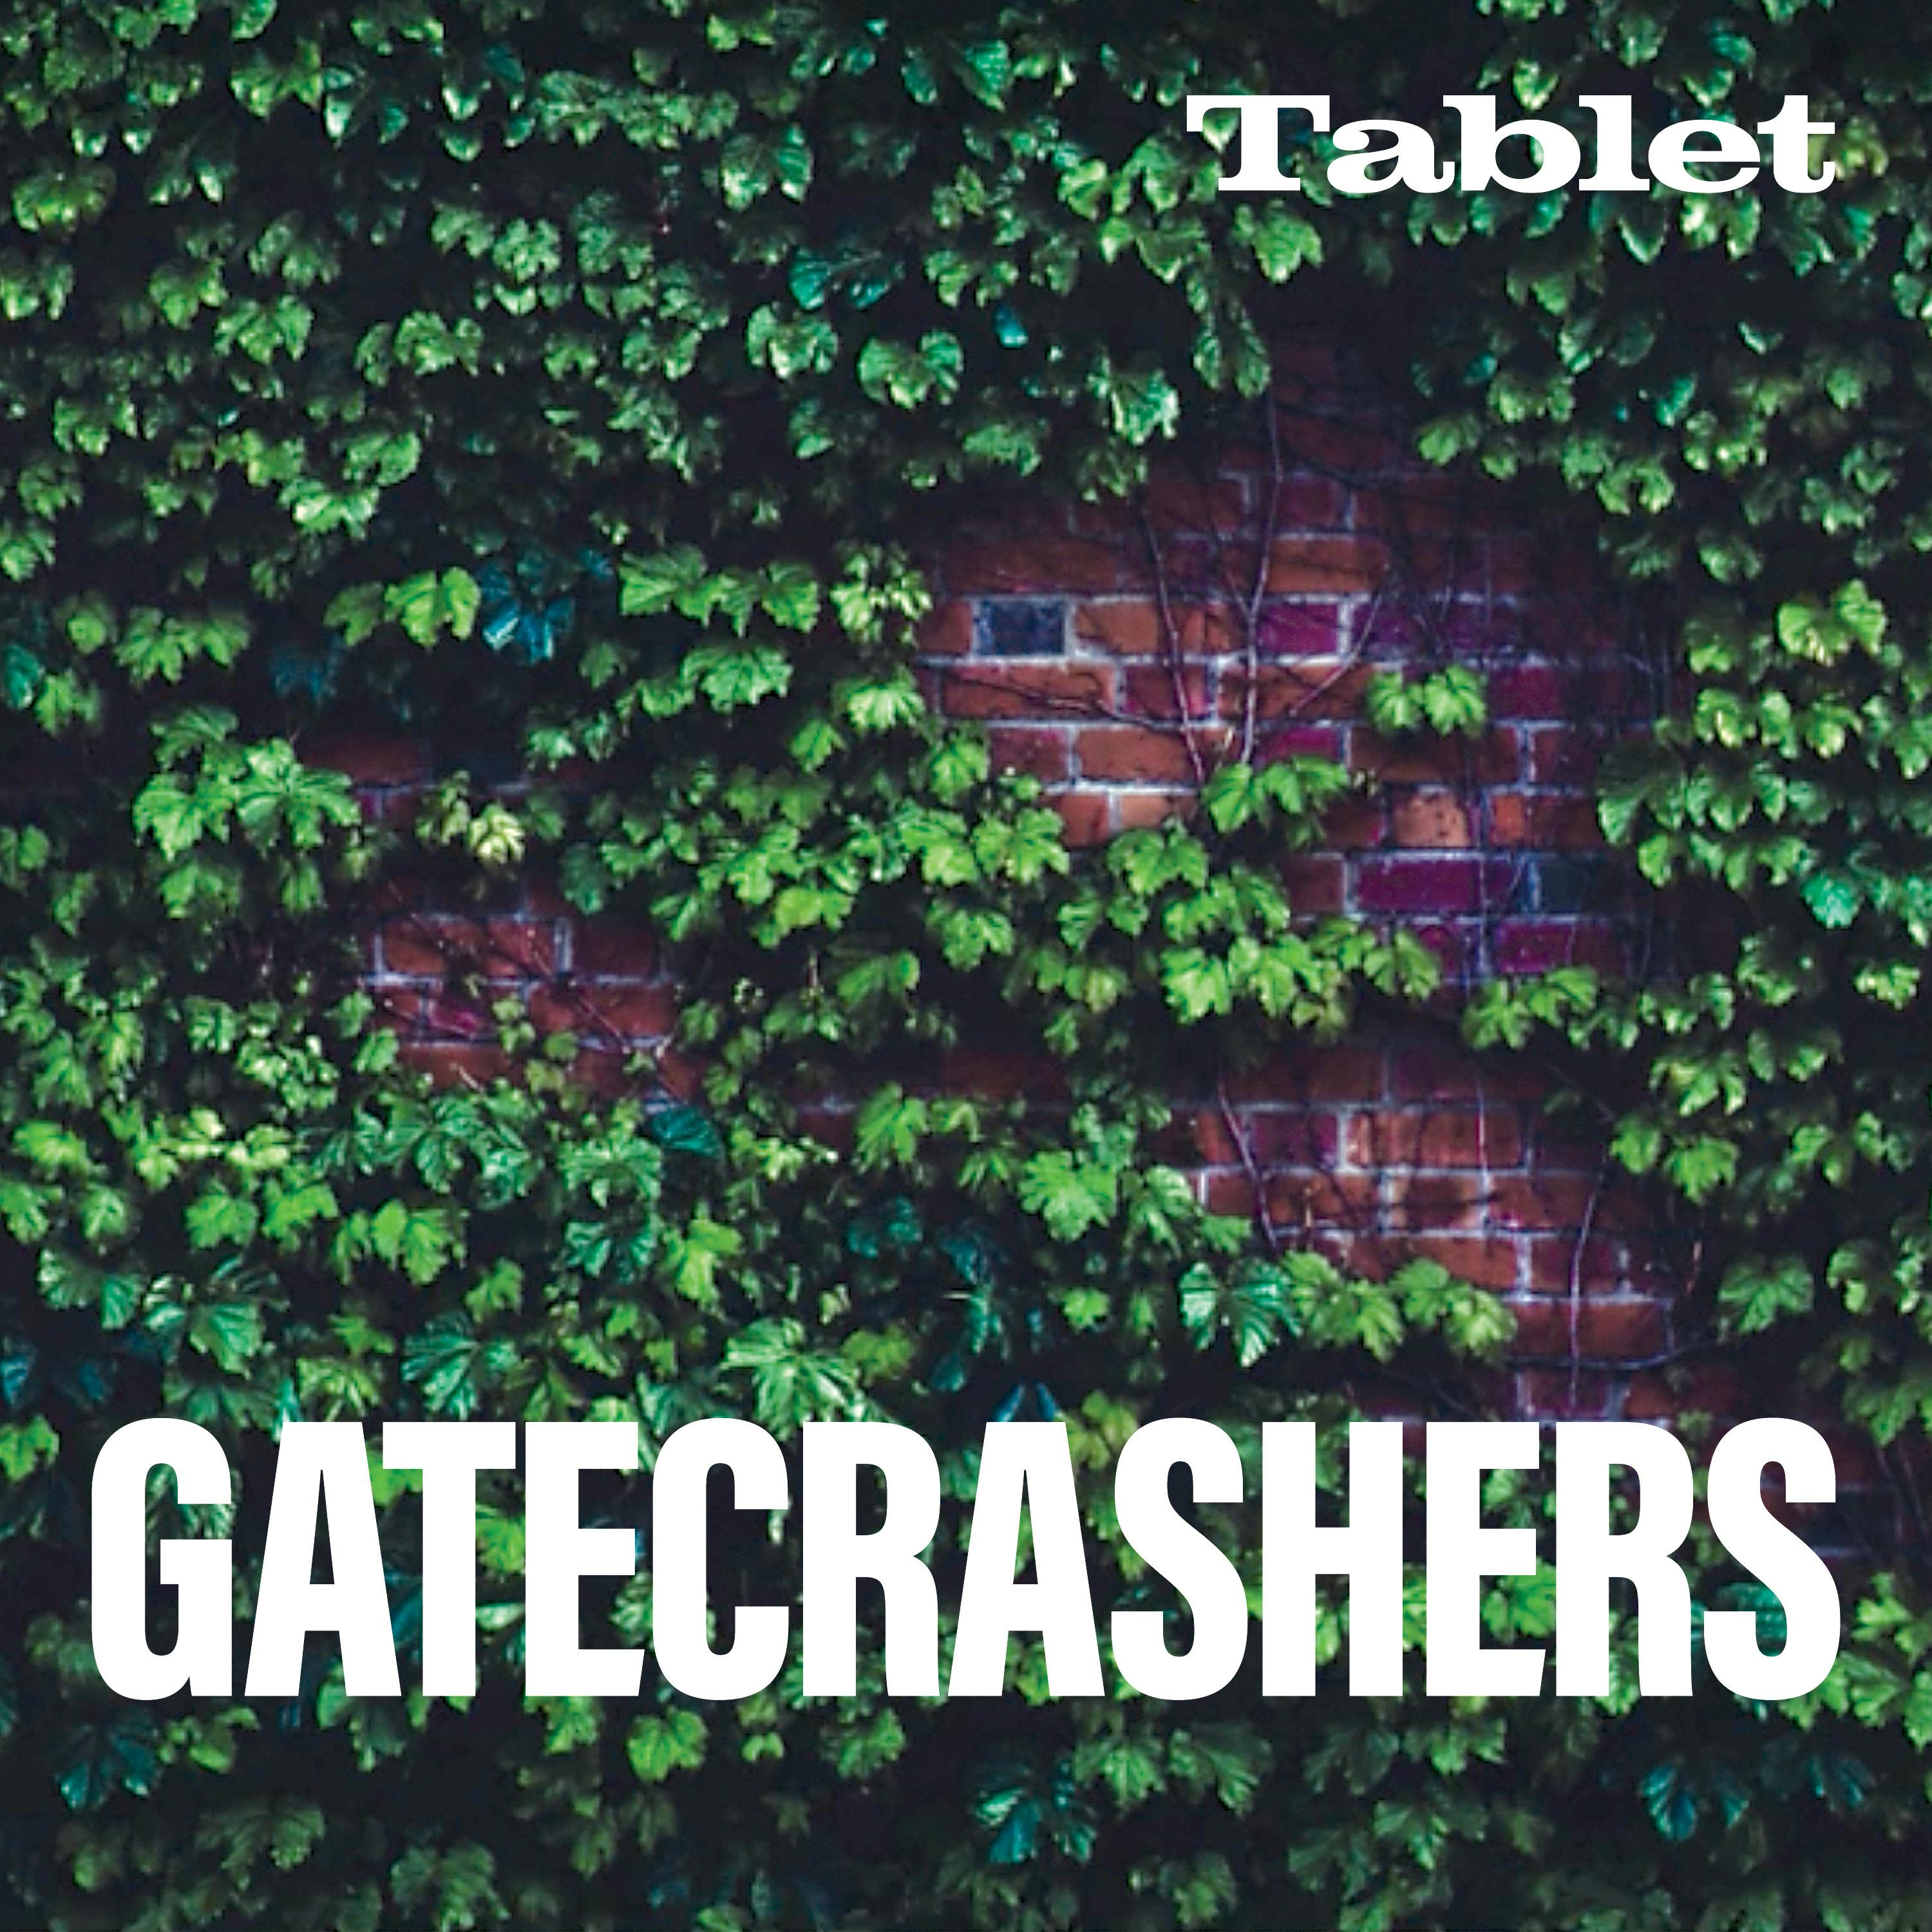 Gatecrashers podcast show image